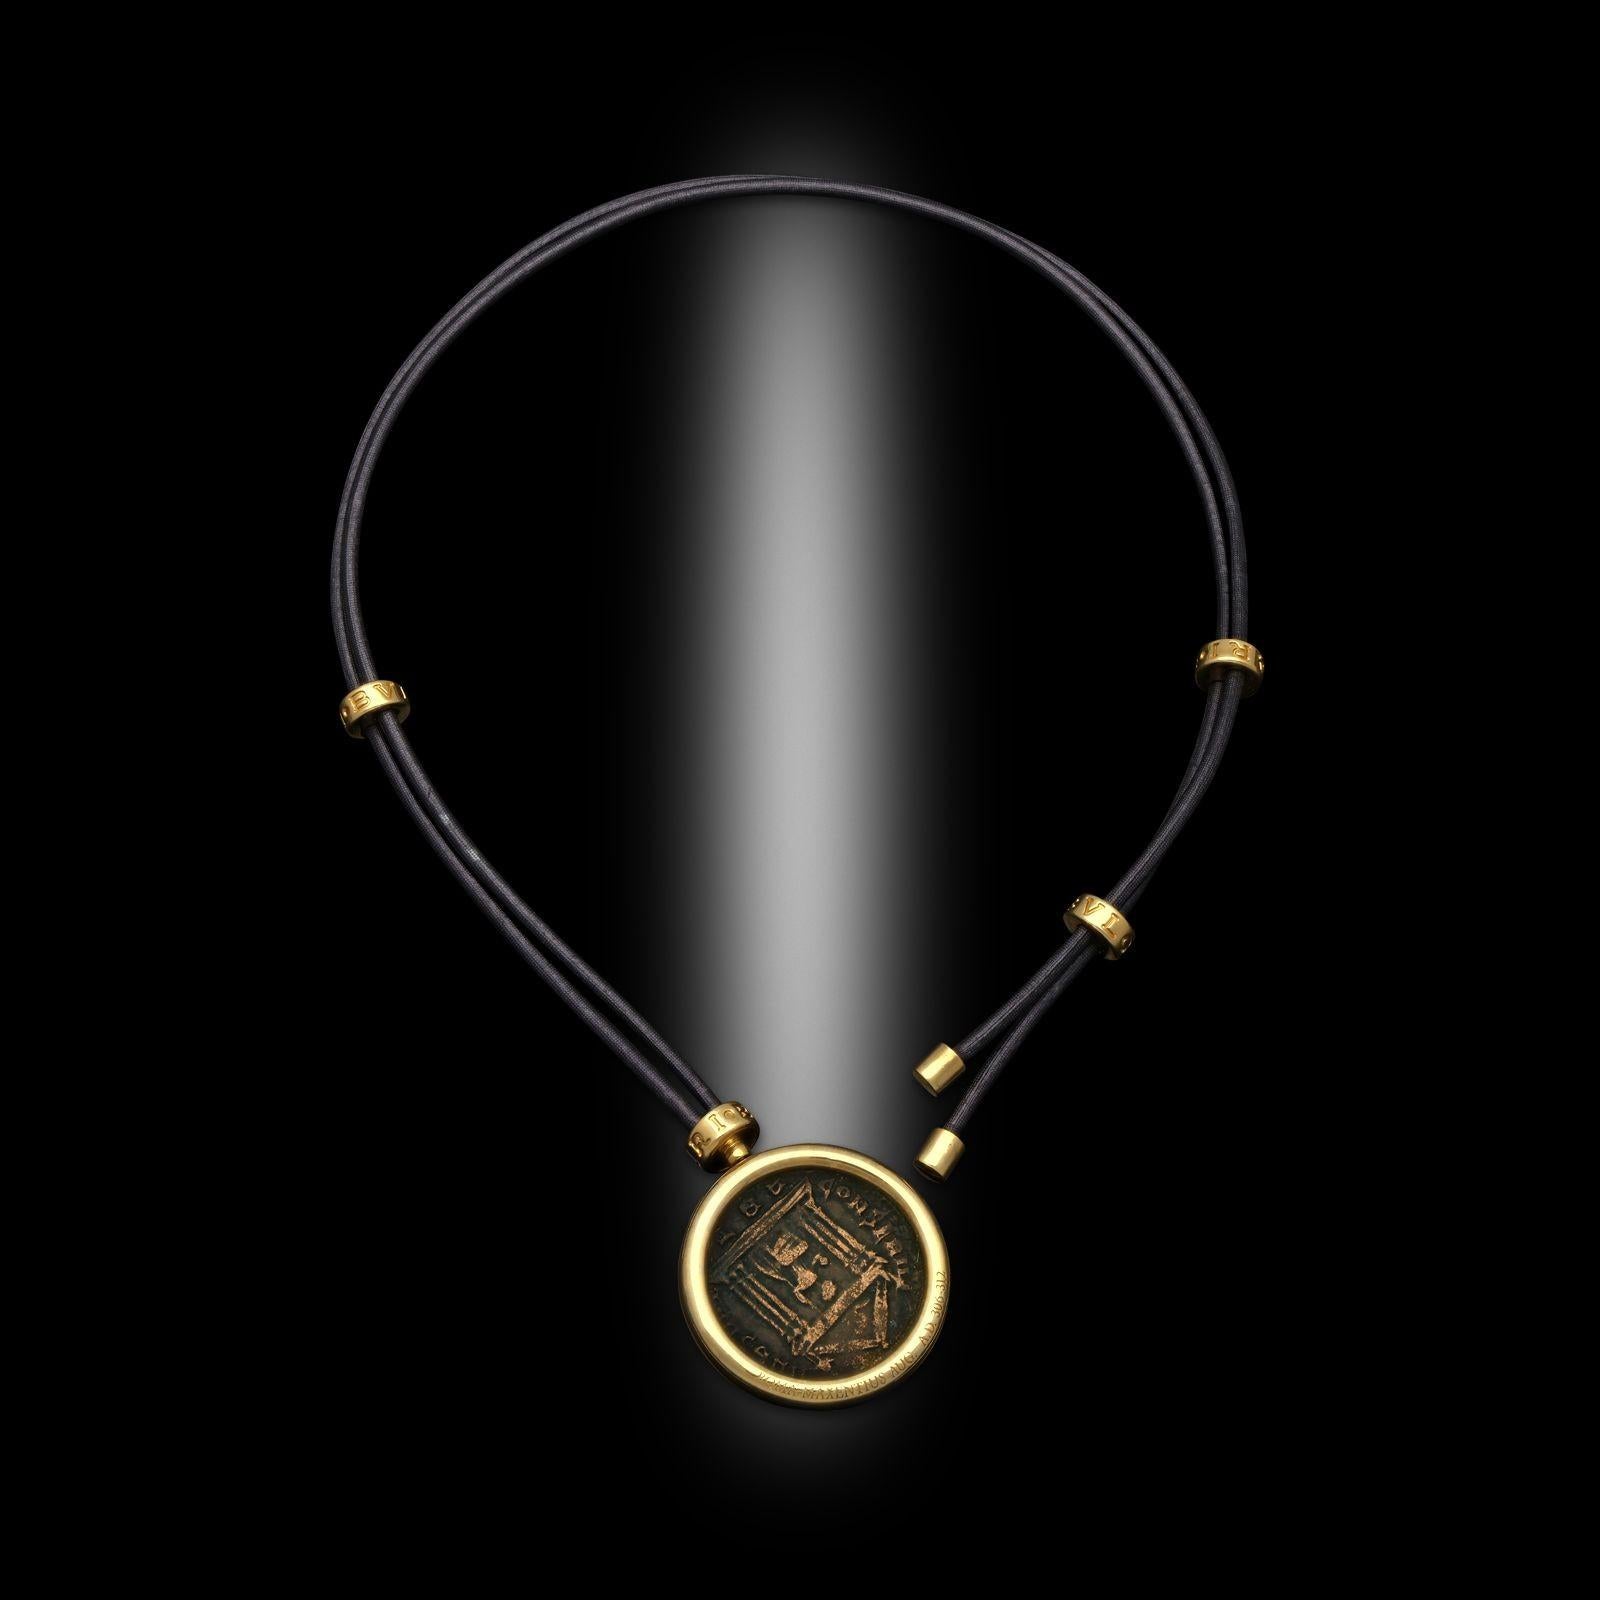 Ein Vintage-Anhänger Monet von Bulgari, 1990er Jahre. Diese Halskette besteht aus einer einzelnen antiken römischen Bronzemünze, die in eine runde Fassung aus 18-karätigem Gelbgold eingelassen ist. Die Münze hängt an einer schwarzen Lederschnur, die